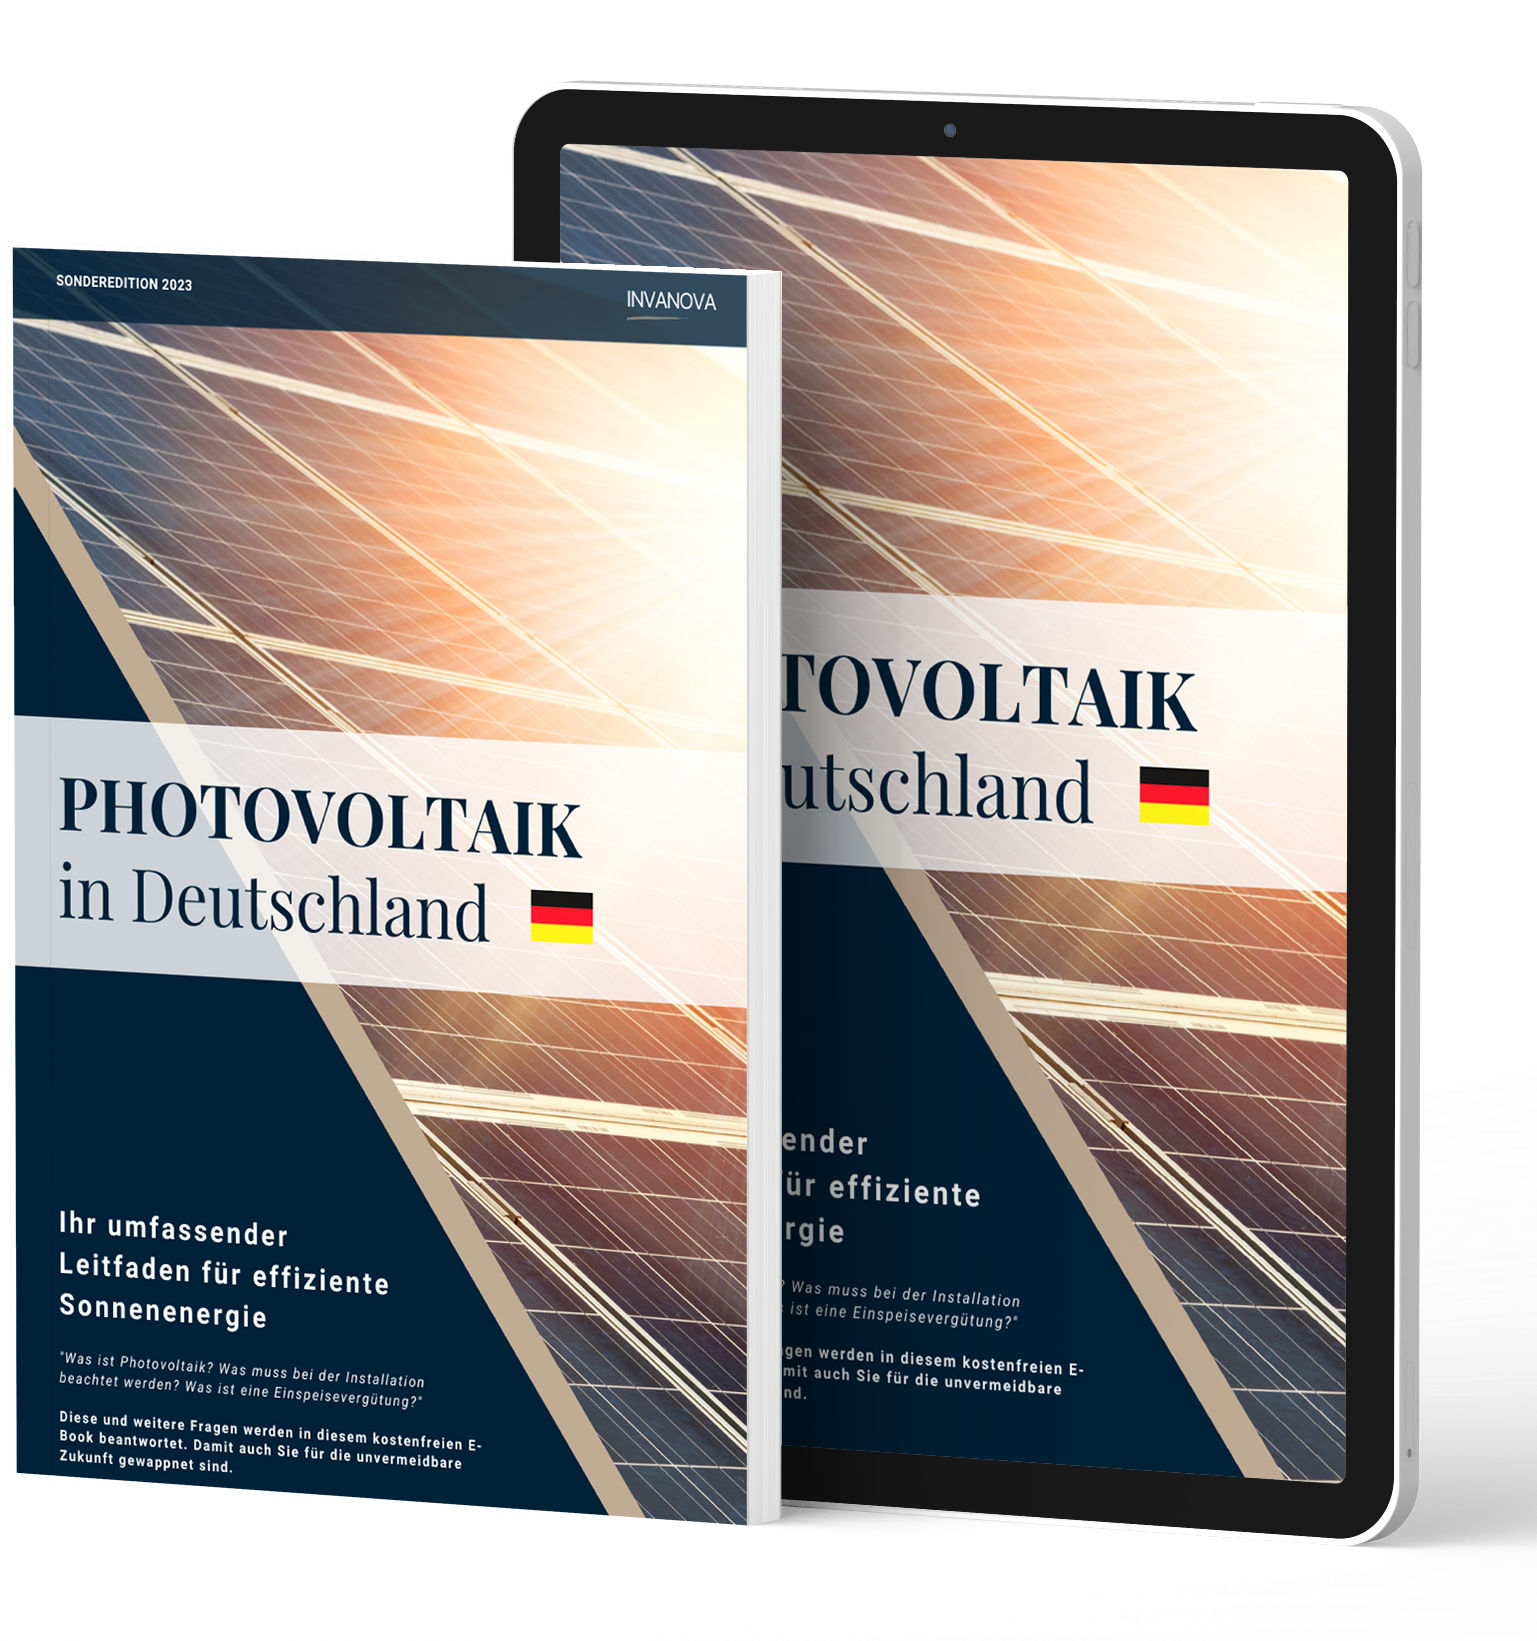 INVANOVA_Photovoltaik Ebook Umfassender Leitfaden-1